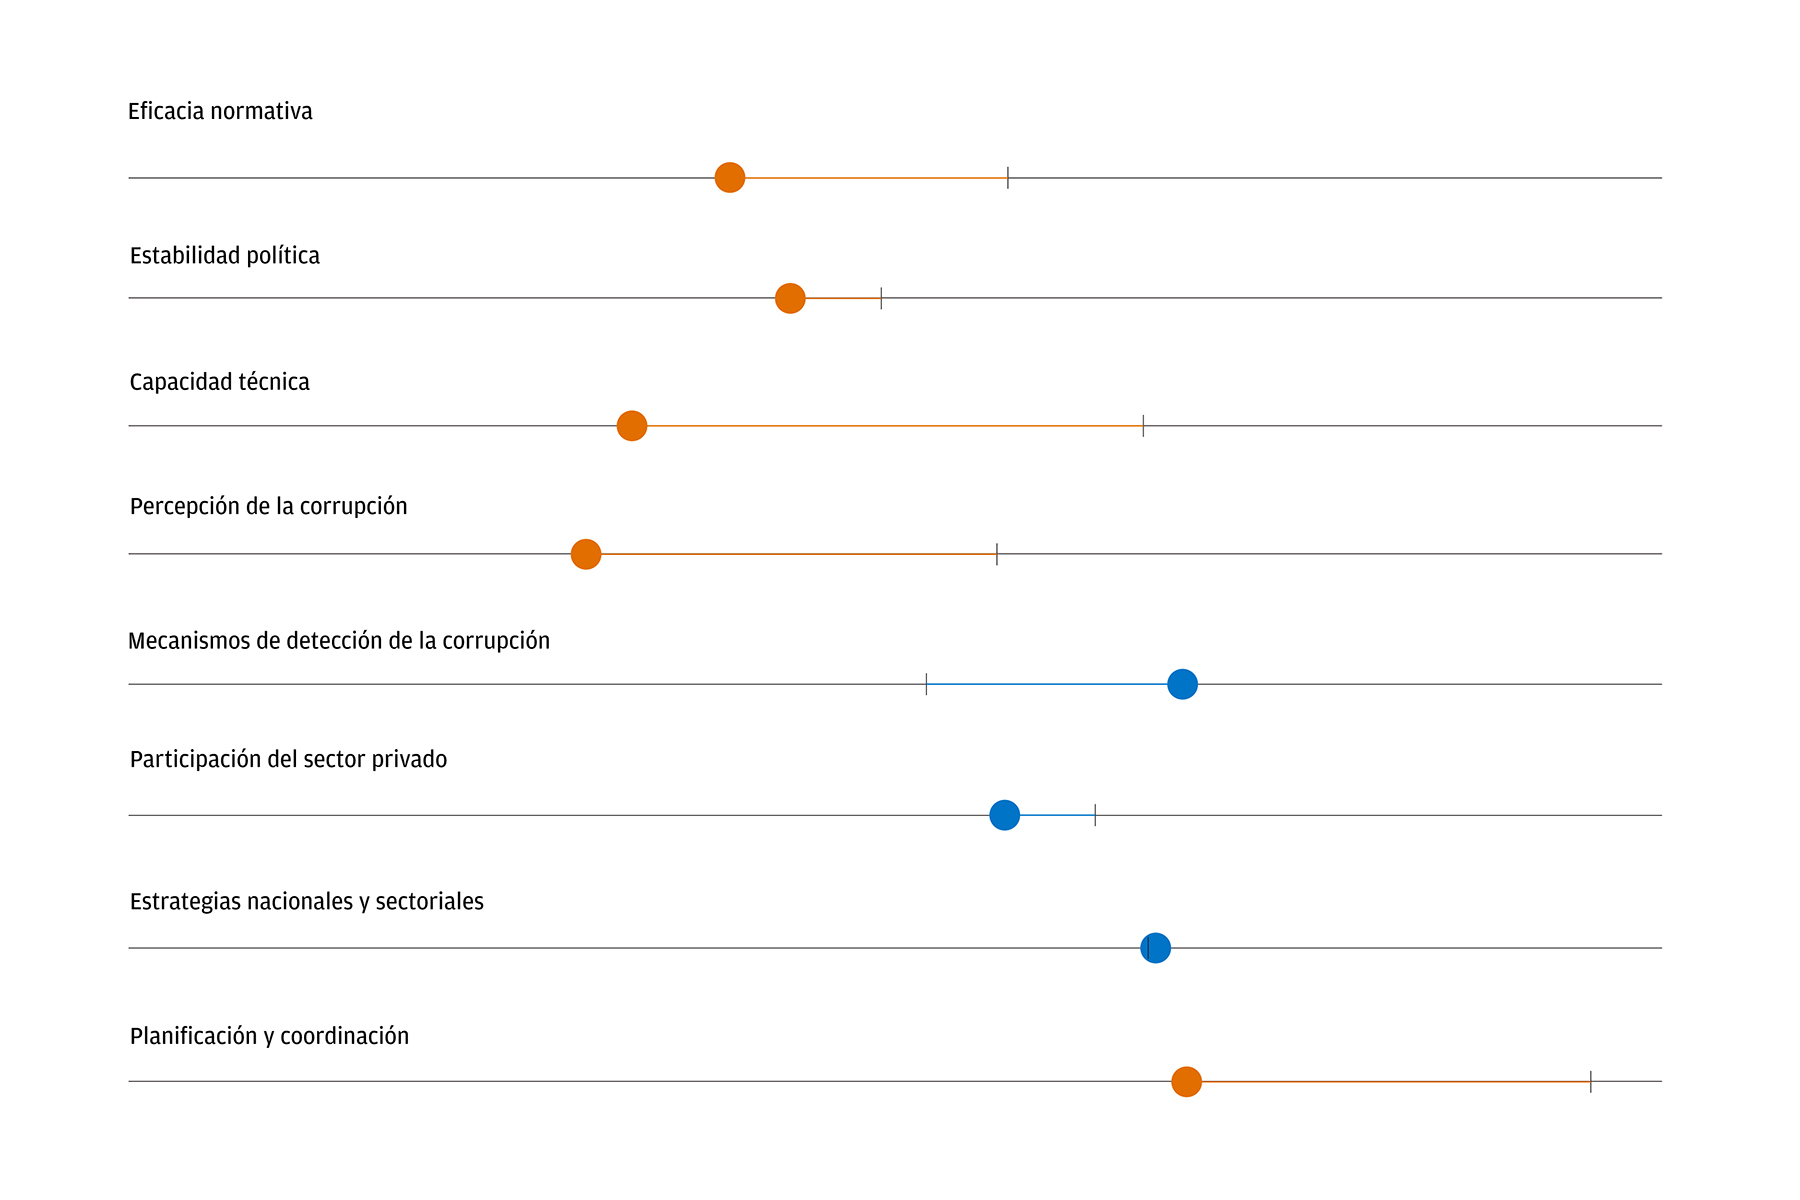 Este gráfico muestra que Argentina obtuvo una puntuación muy por debajo del promedio en el indicador de efectividad regulatoria (en lo que se refiere al desarrollo de infraestructura), así como en los subindicadores de estabilidad política, capacidad técnica y percepción sobre la corrupción.